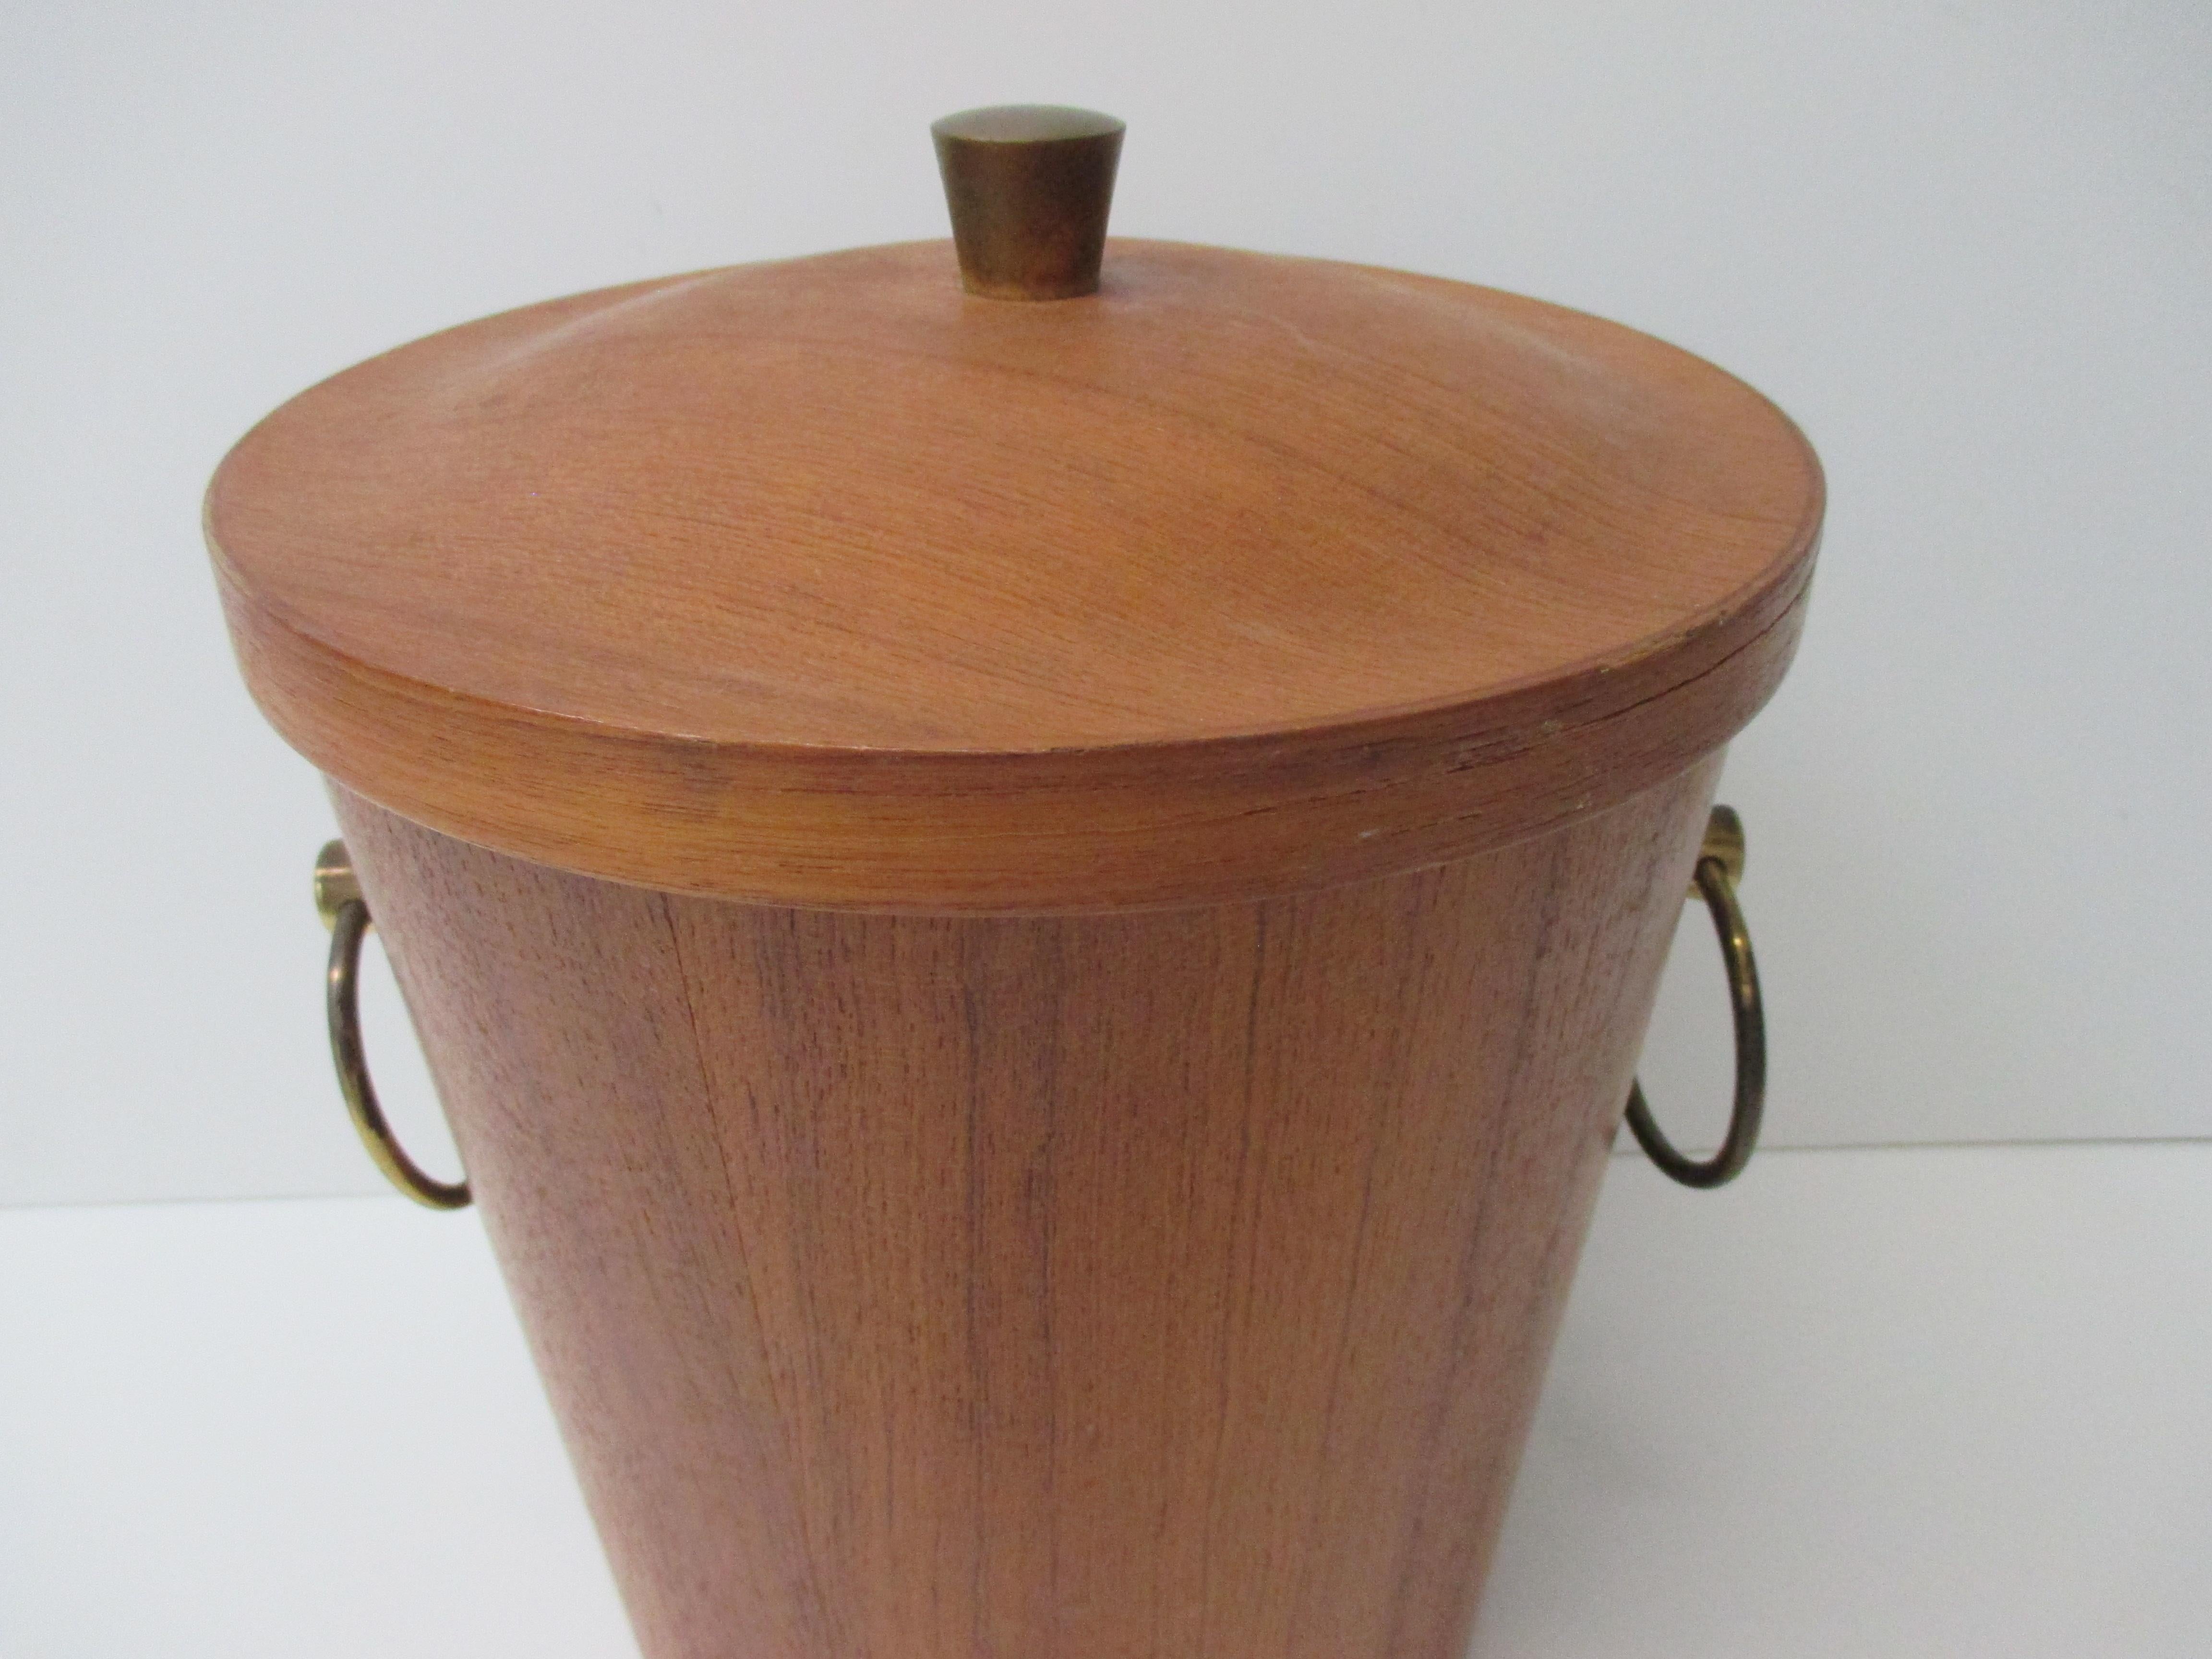 Vintage Mid-Century Modern ice bucket with round brass handles.
Size: 8.5